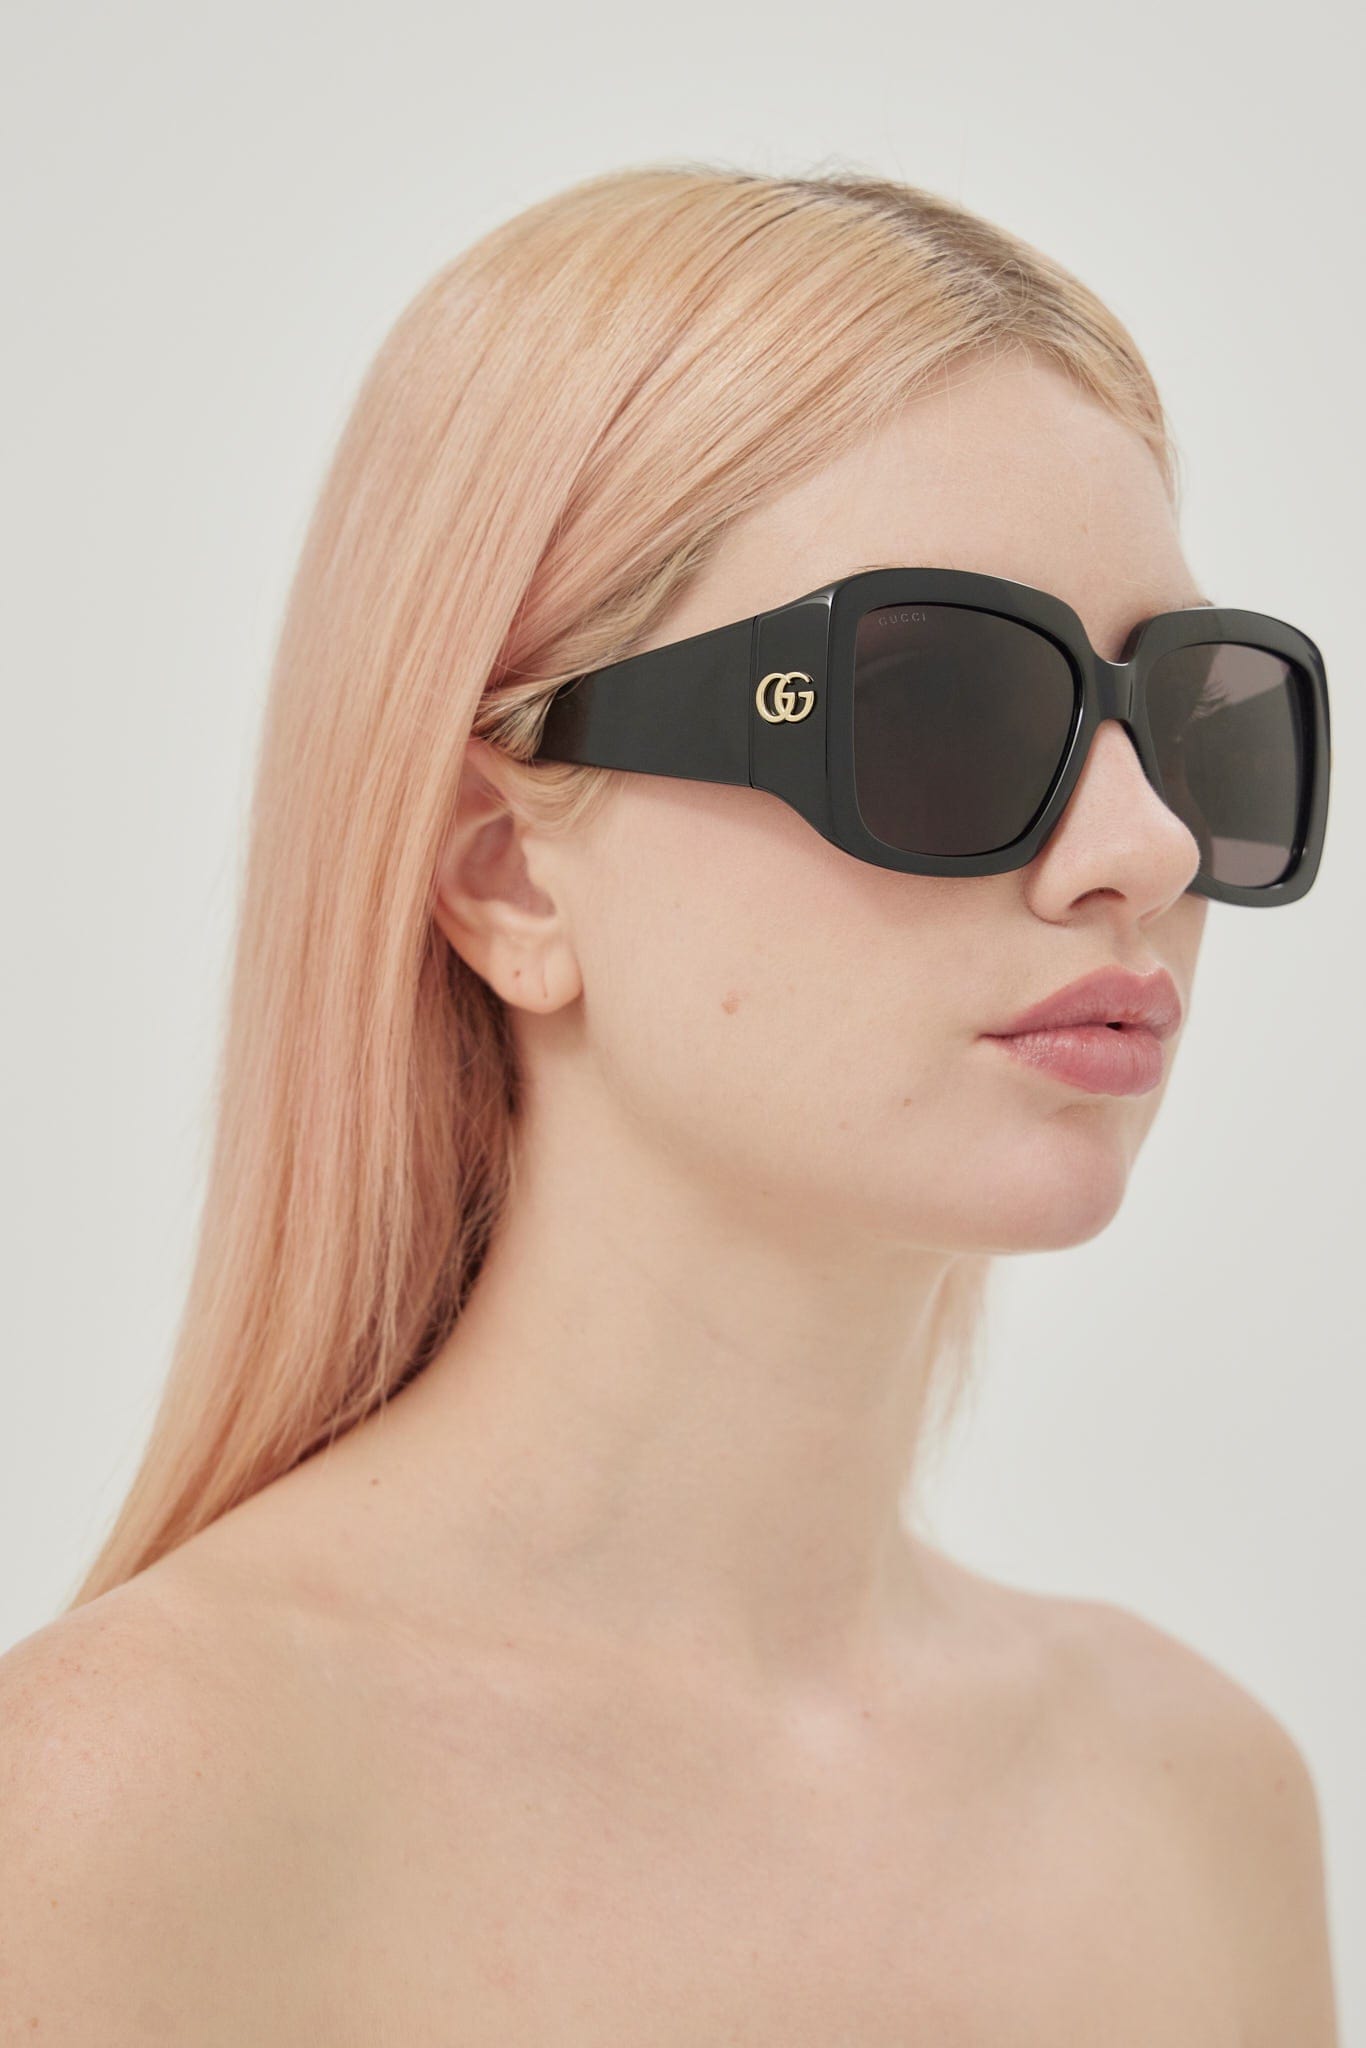 Gucci wrap around black sunglasses - Eyewear Club